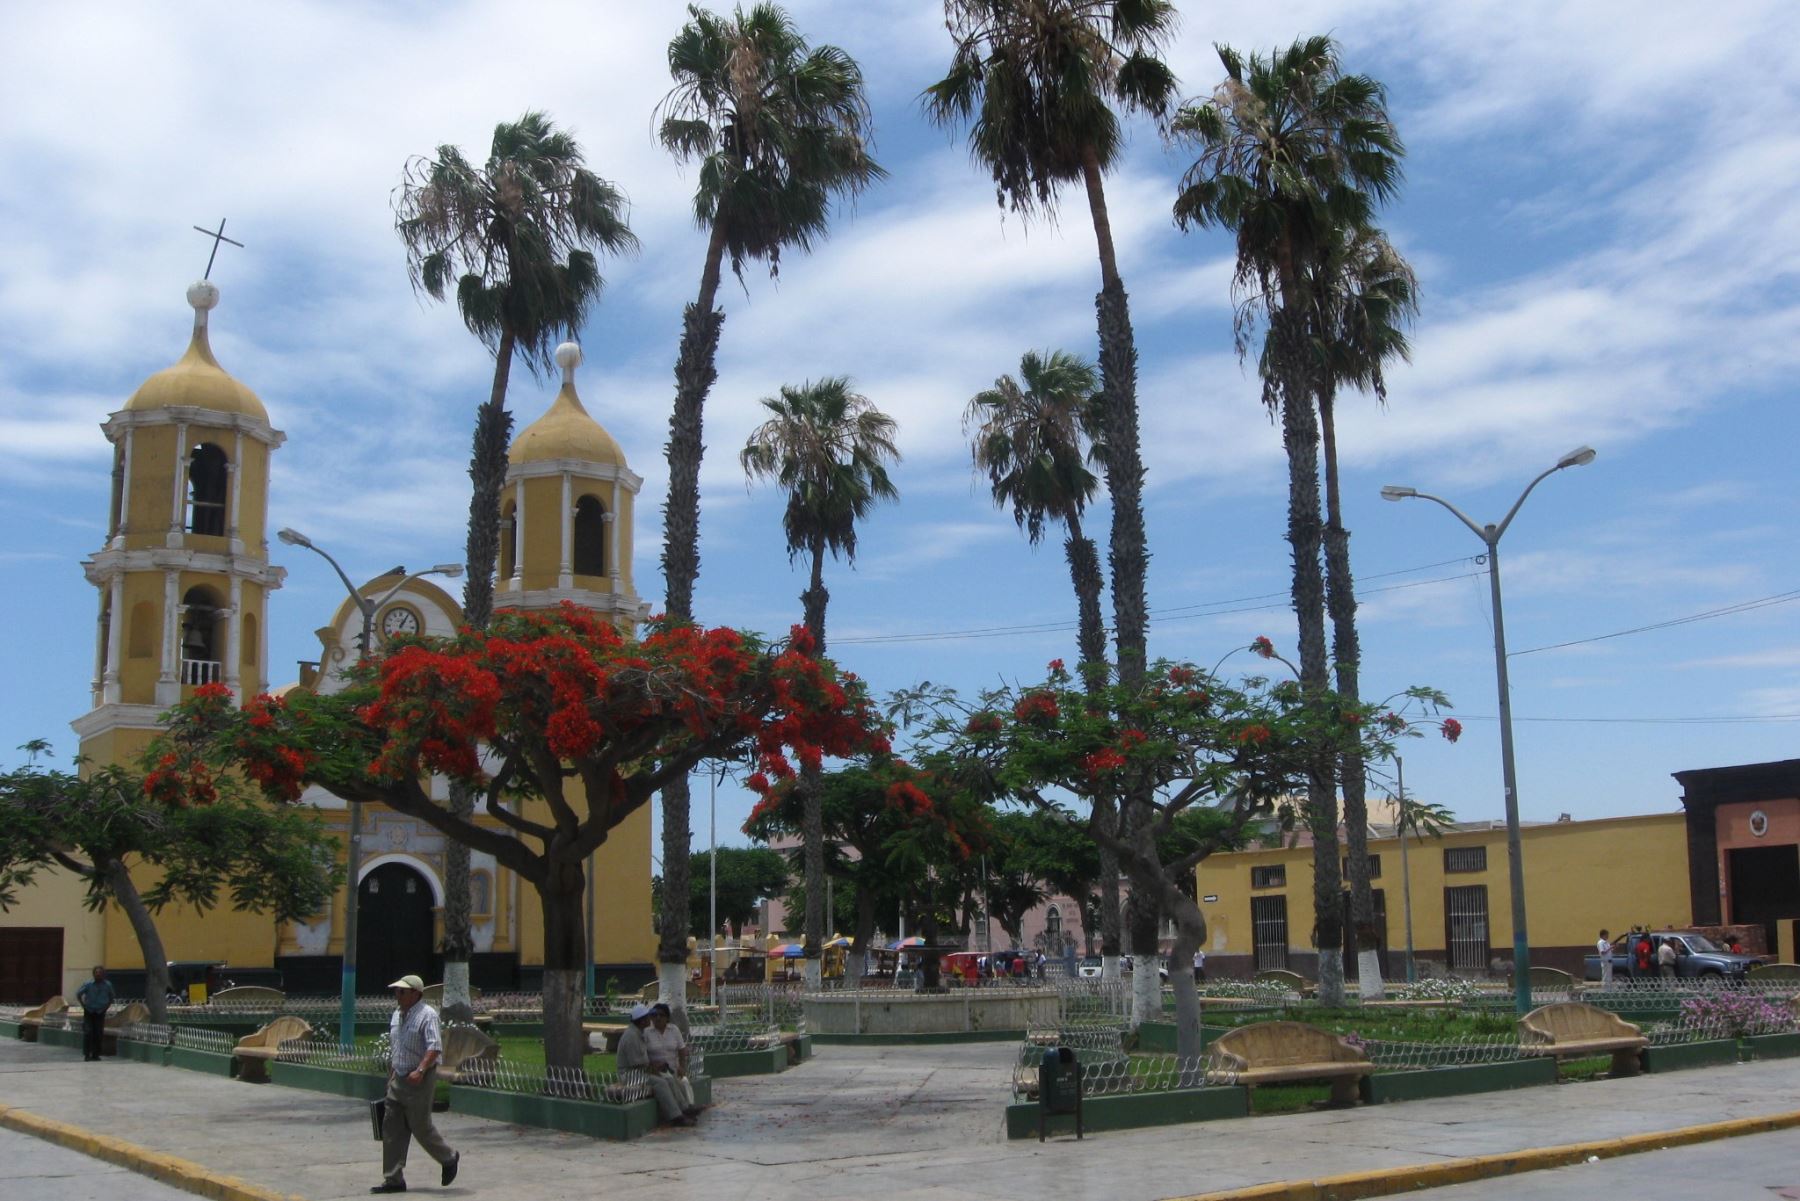 San Pedro de Lloc, capitial de Pacasmayo, fue remecida hoy por un sismo de magnitud 4.0, informó el IGP. Foto: ANDINA/archivo.